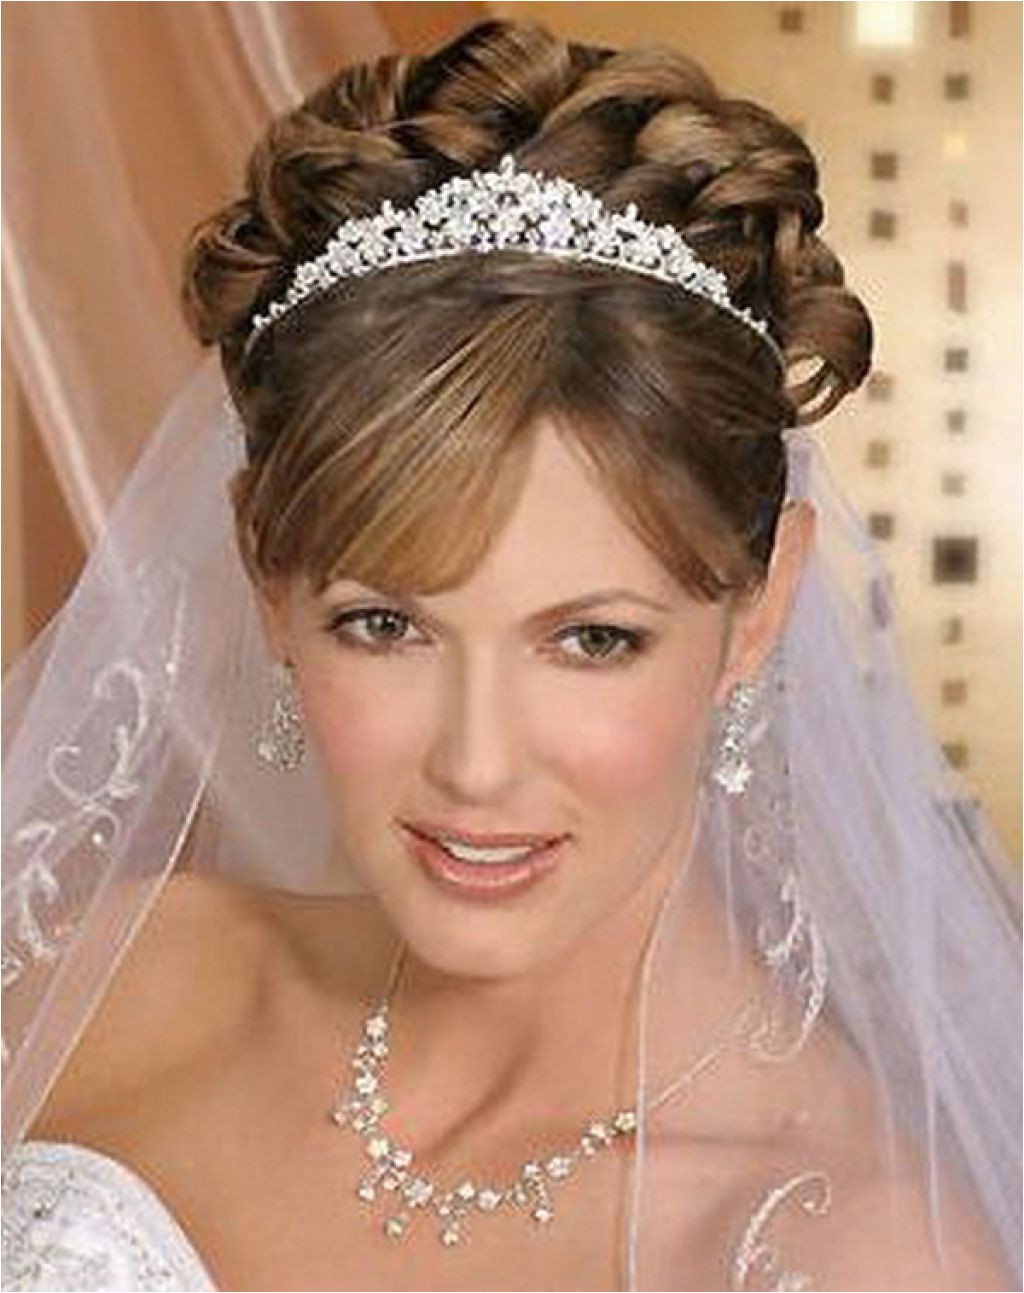 Wedding Hairstyles with Tiaras Tiara Wedding Hairstyles Ideas for Brides Hairzstyle